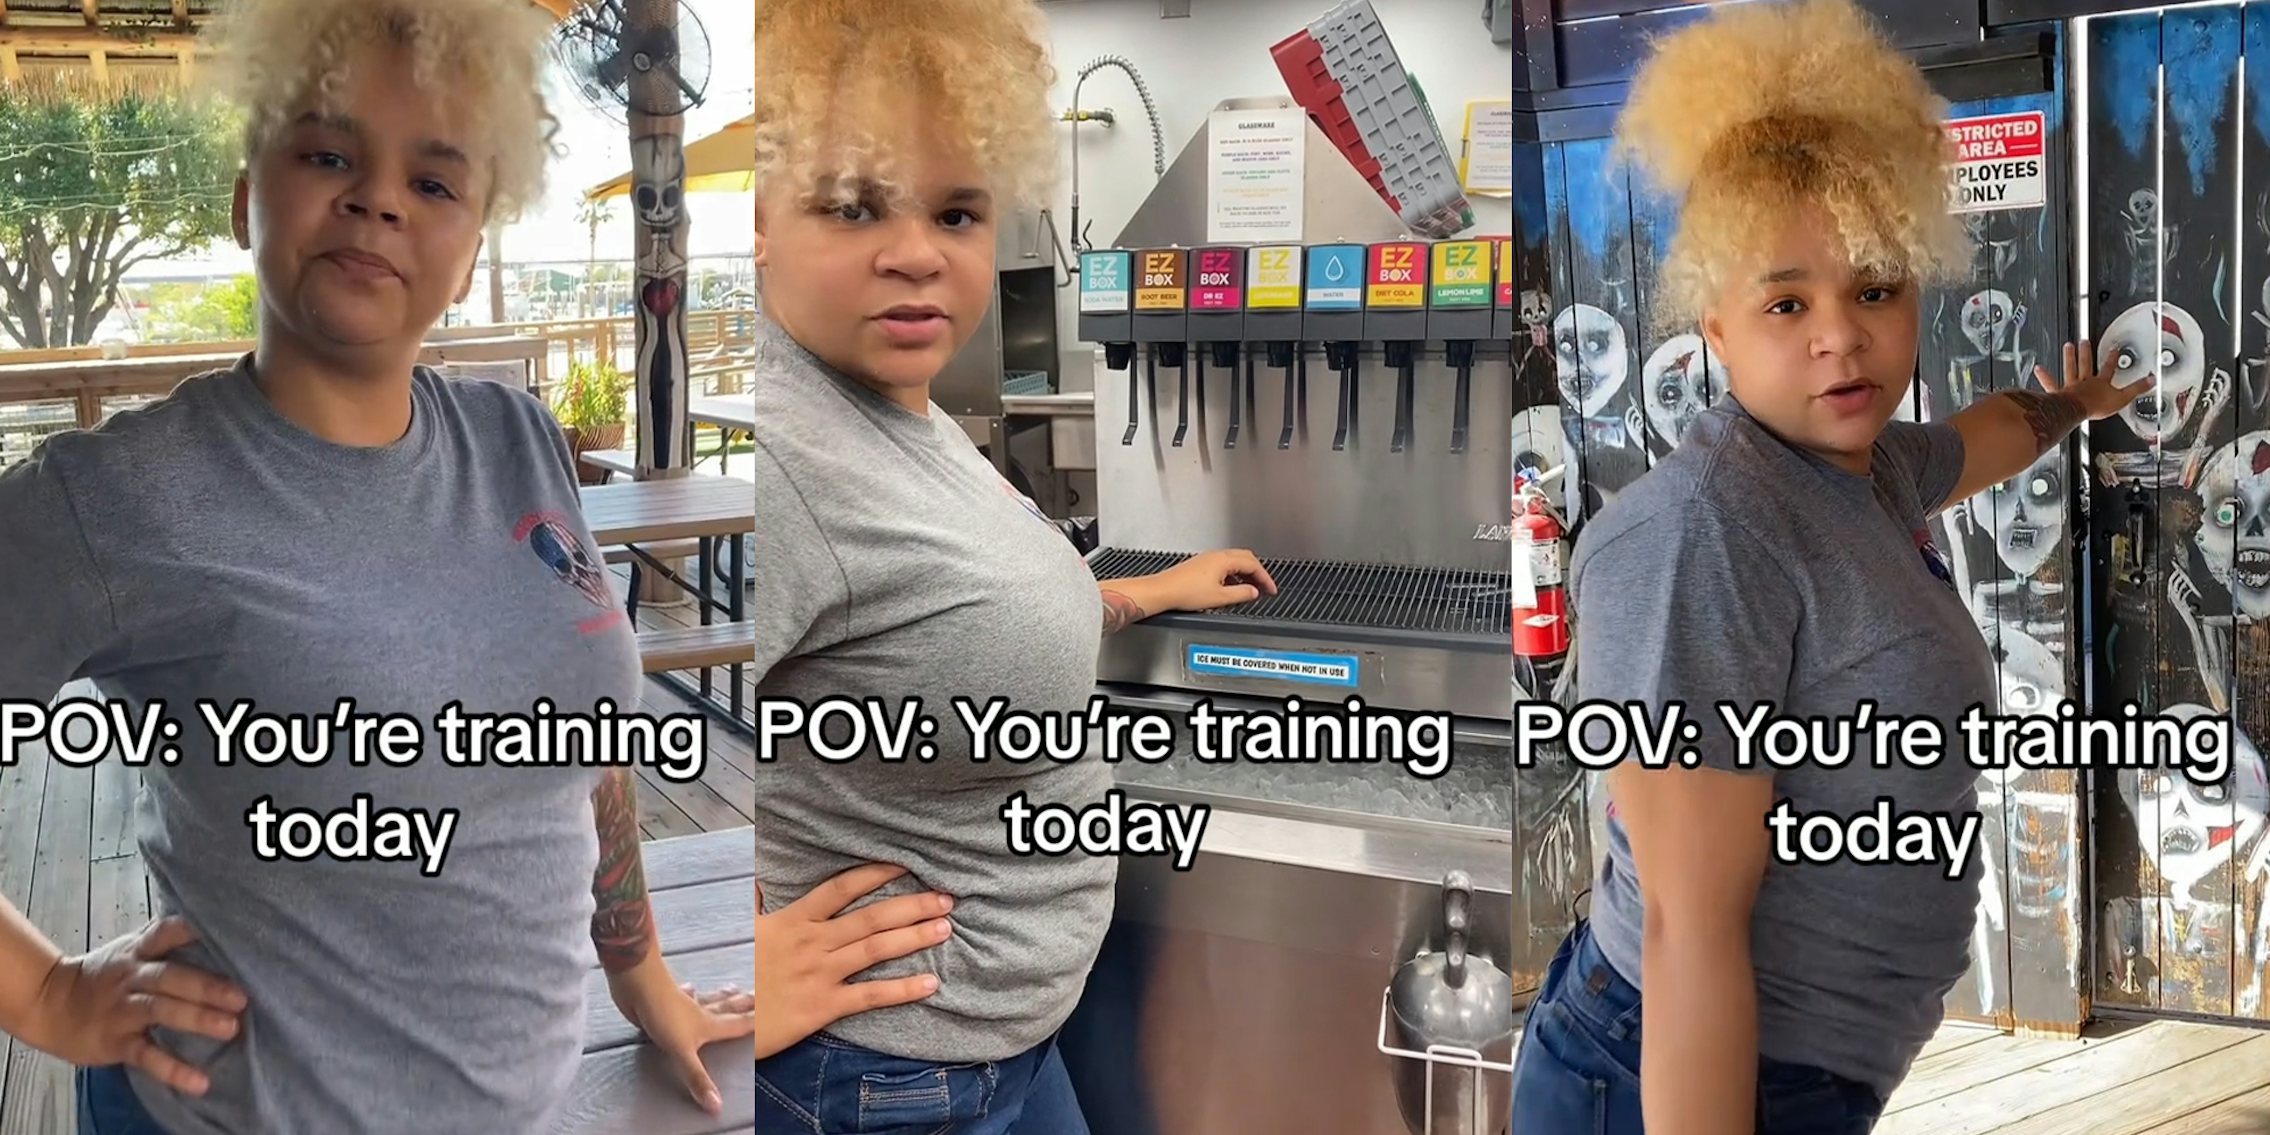 Server POV: You’re training today